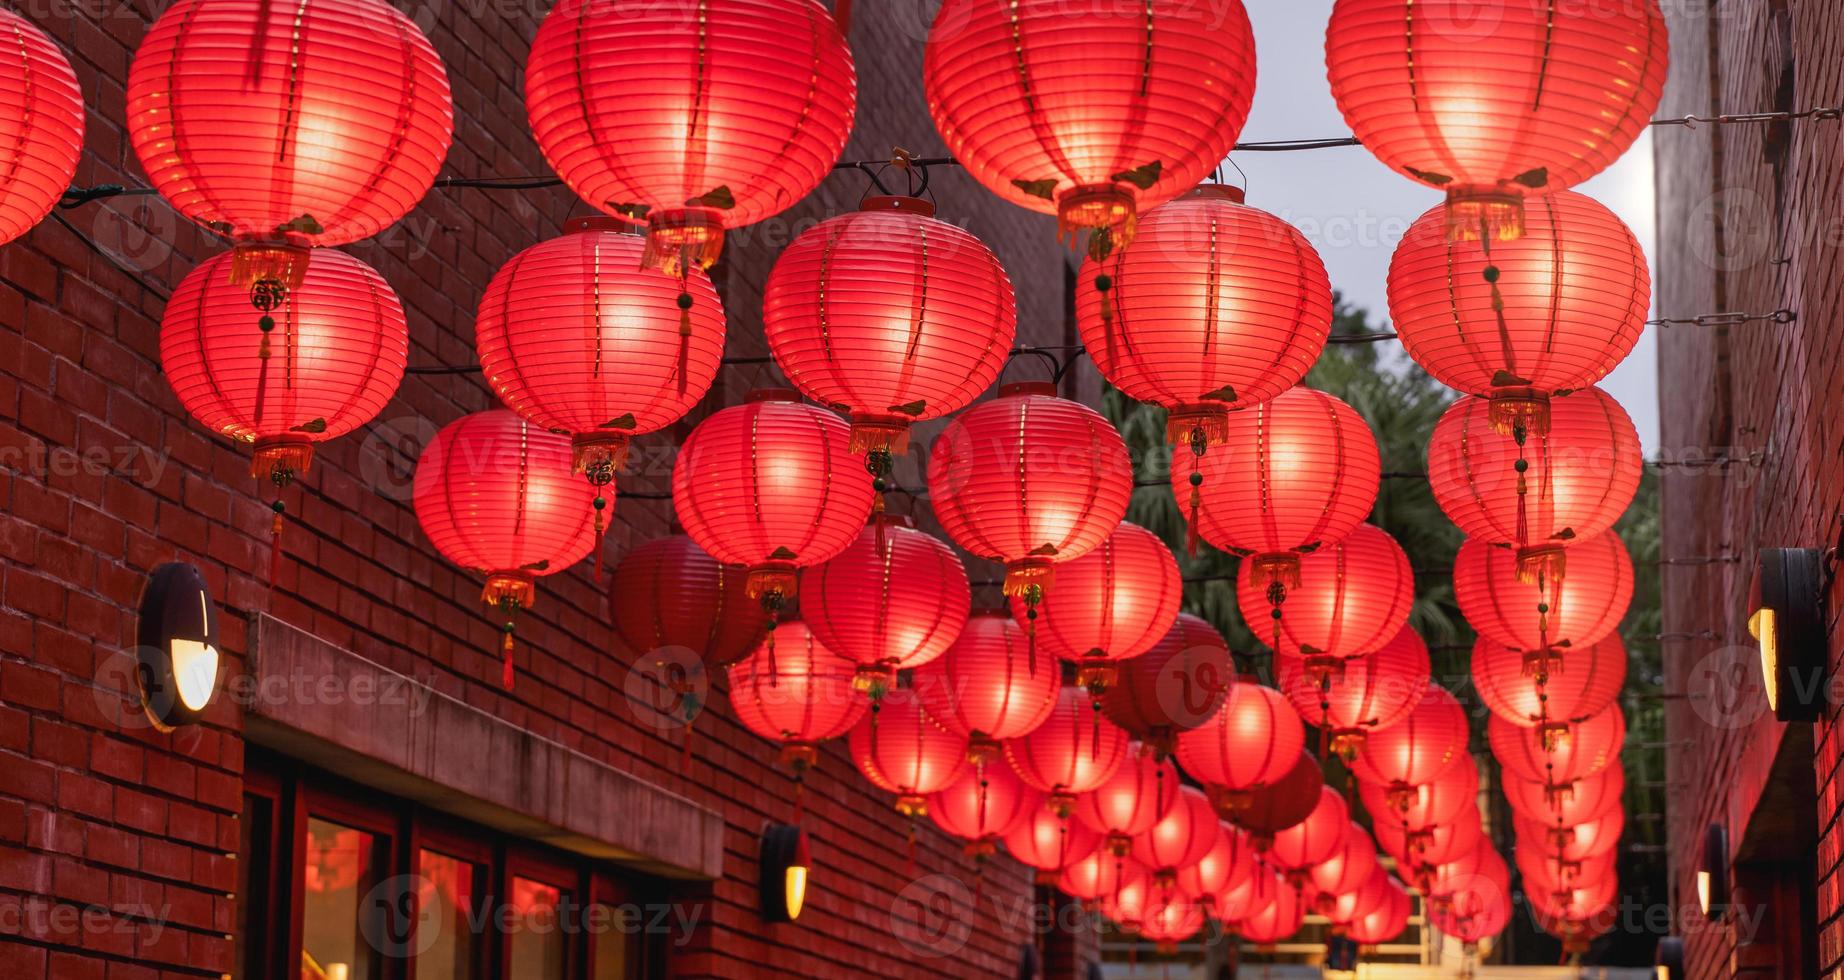 linda lanterna vermelha redonda pendurada na velha rua tradicional, conceito do festival chinês do ano novo lunar, close-up. a palavra subjacente significa bênção. foto